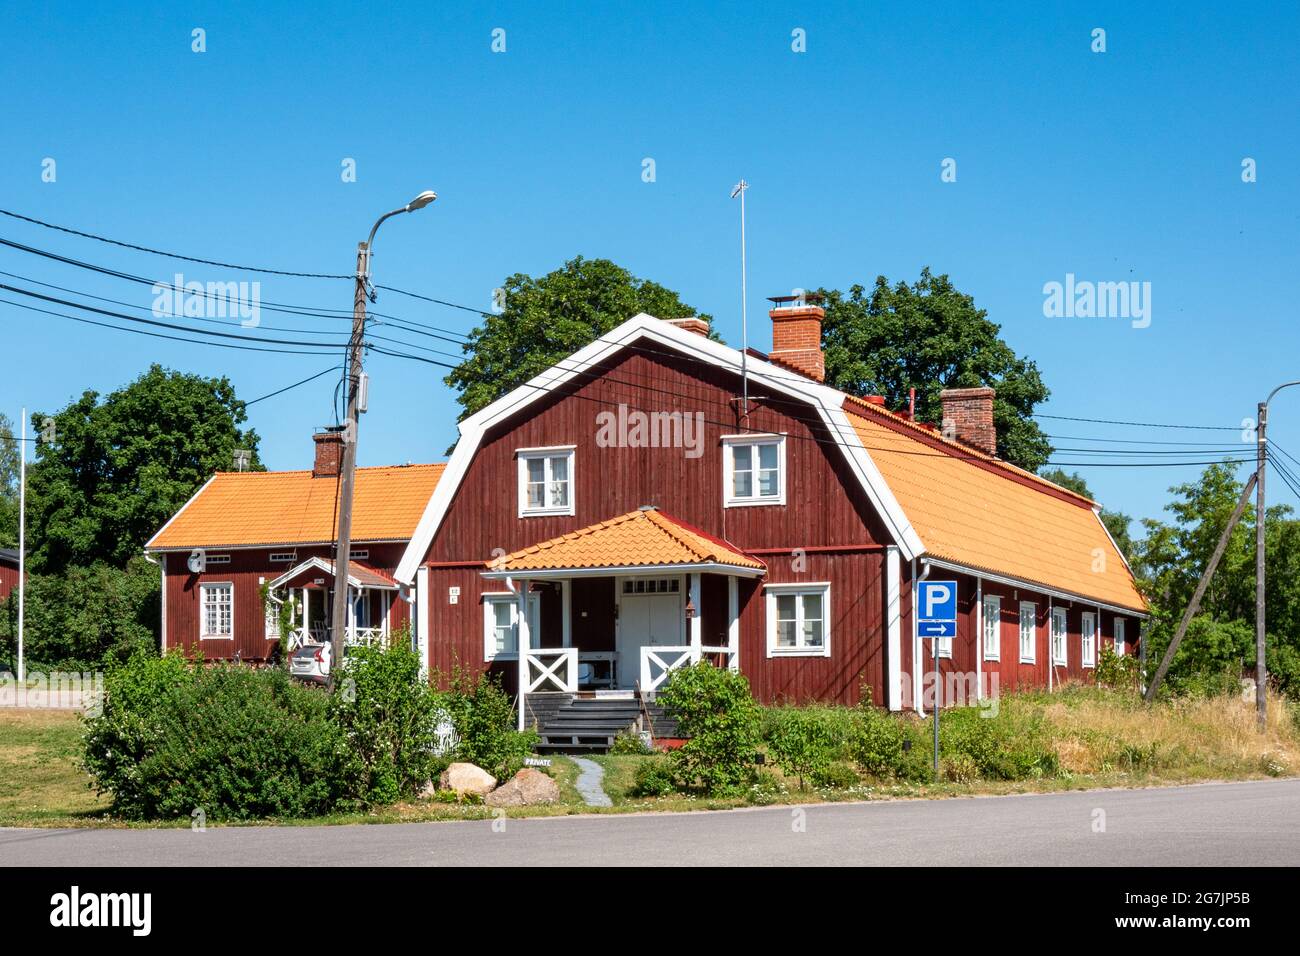 Old wooden residential building in Strömfors or Ruotsinpyhtää, Finland Stock Photo